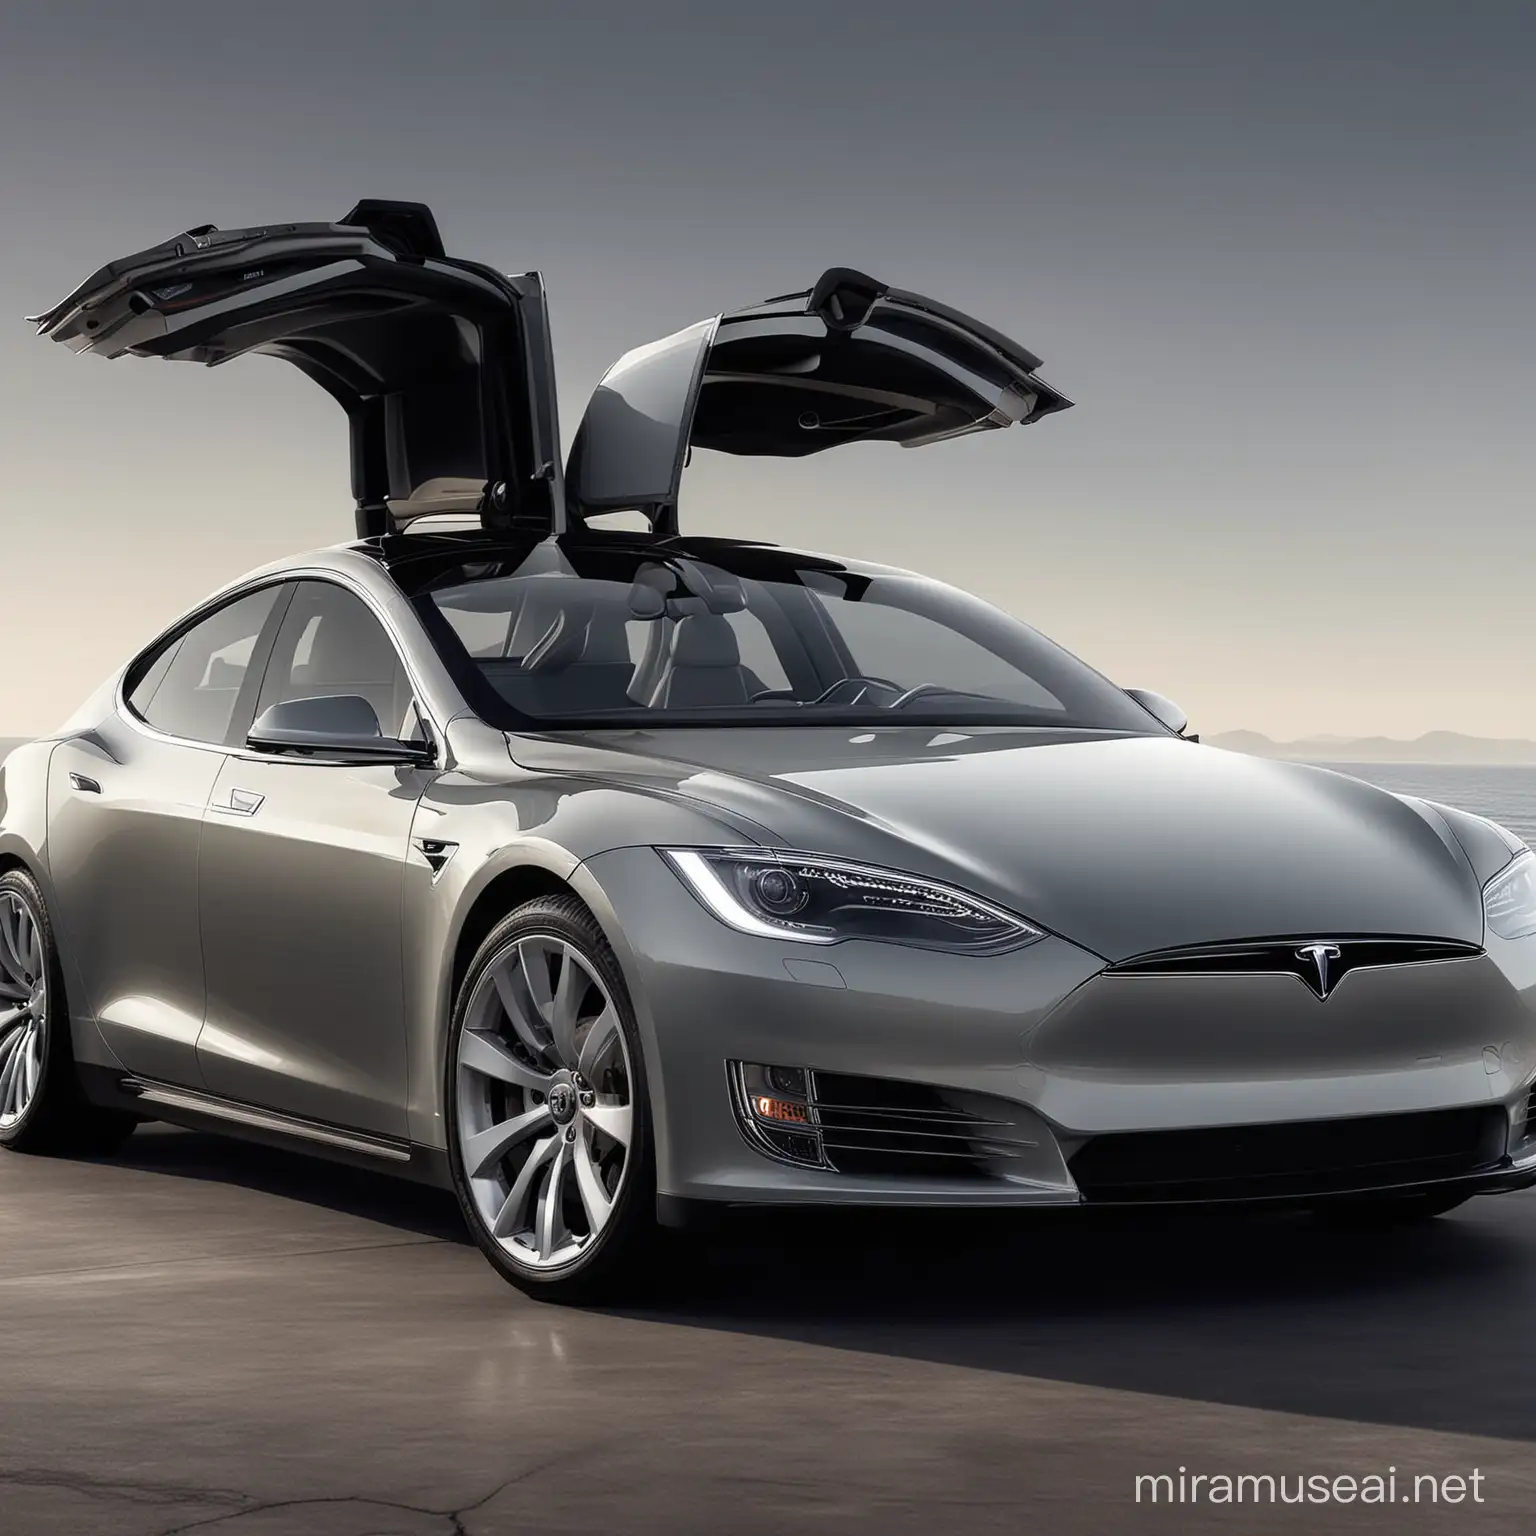 Luxurious Tesla Model S Electric Car with Advanced Autonomous Features